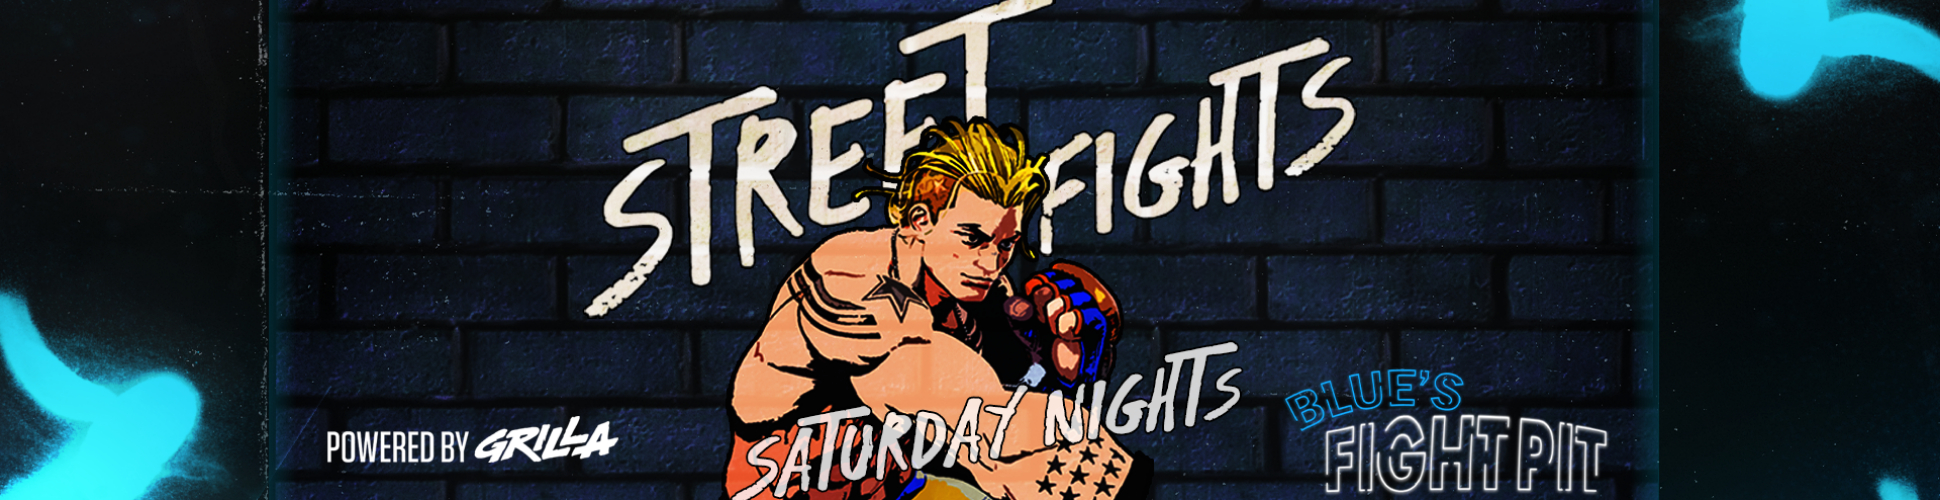 Blue's Fight Pit: Street Fights R4 Saturday Nights #21